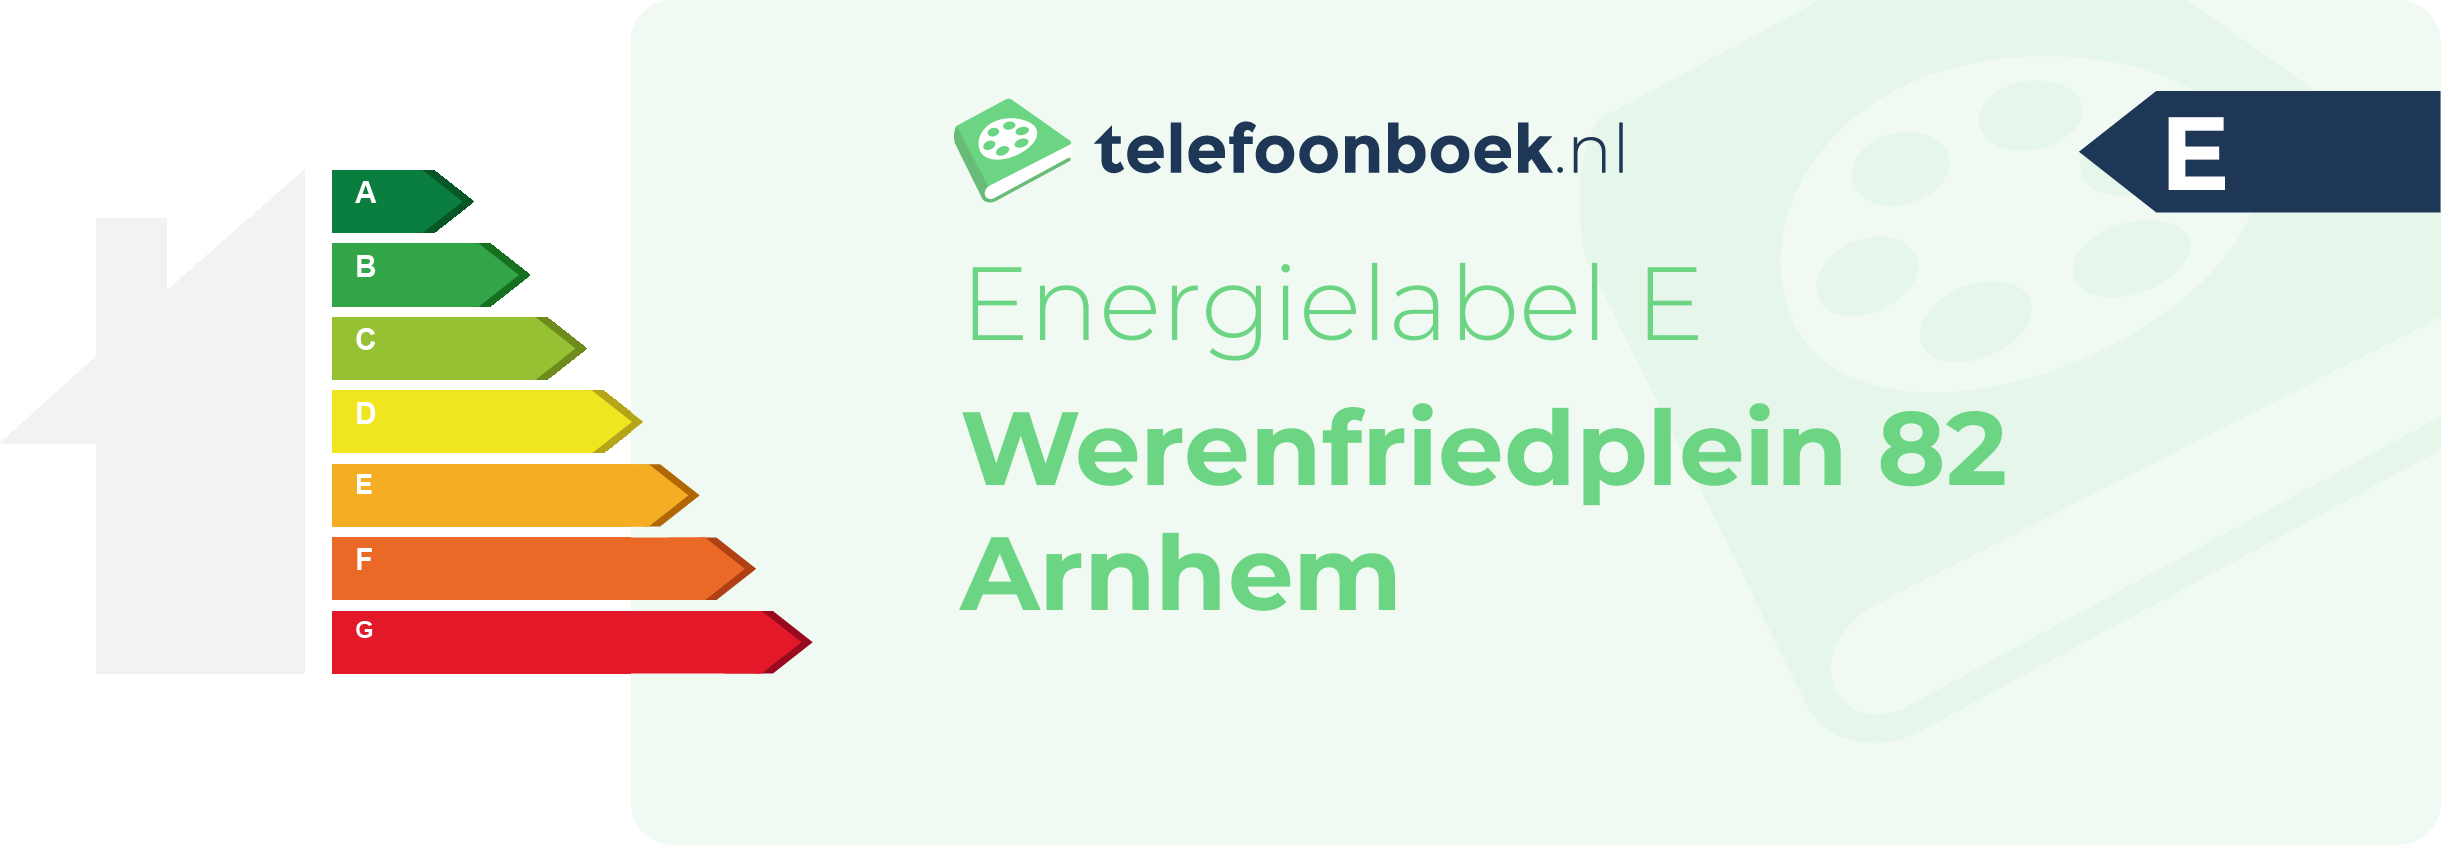 Energielabel Werenfriedplein 82 Arnhem